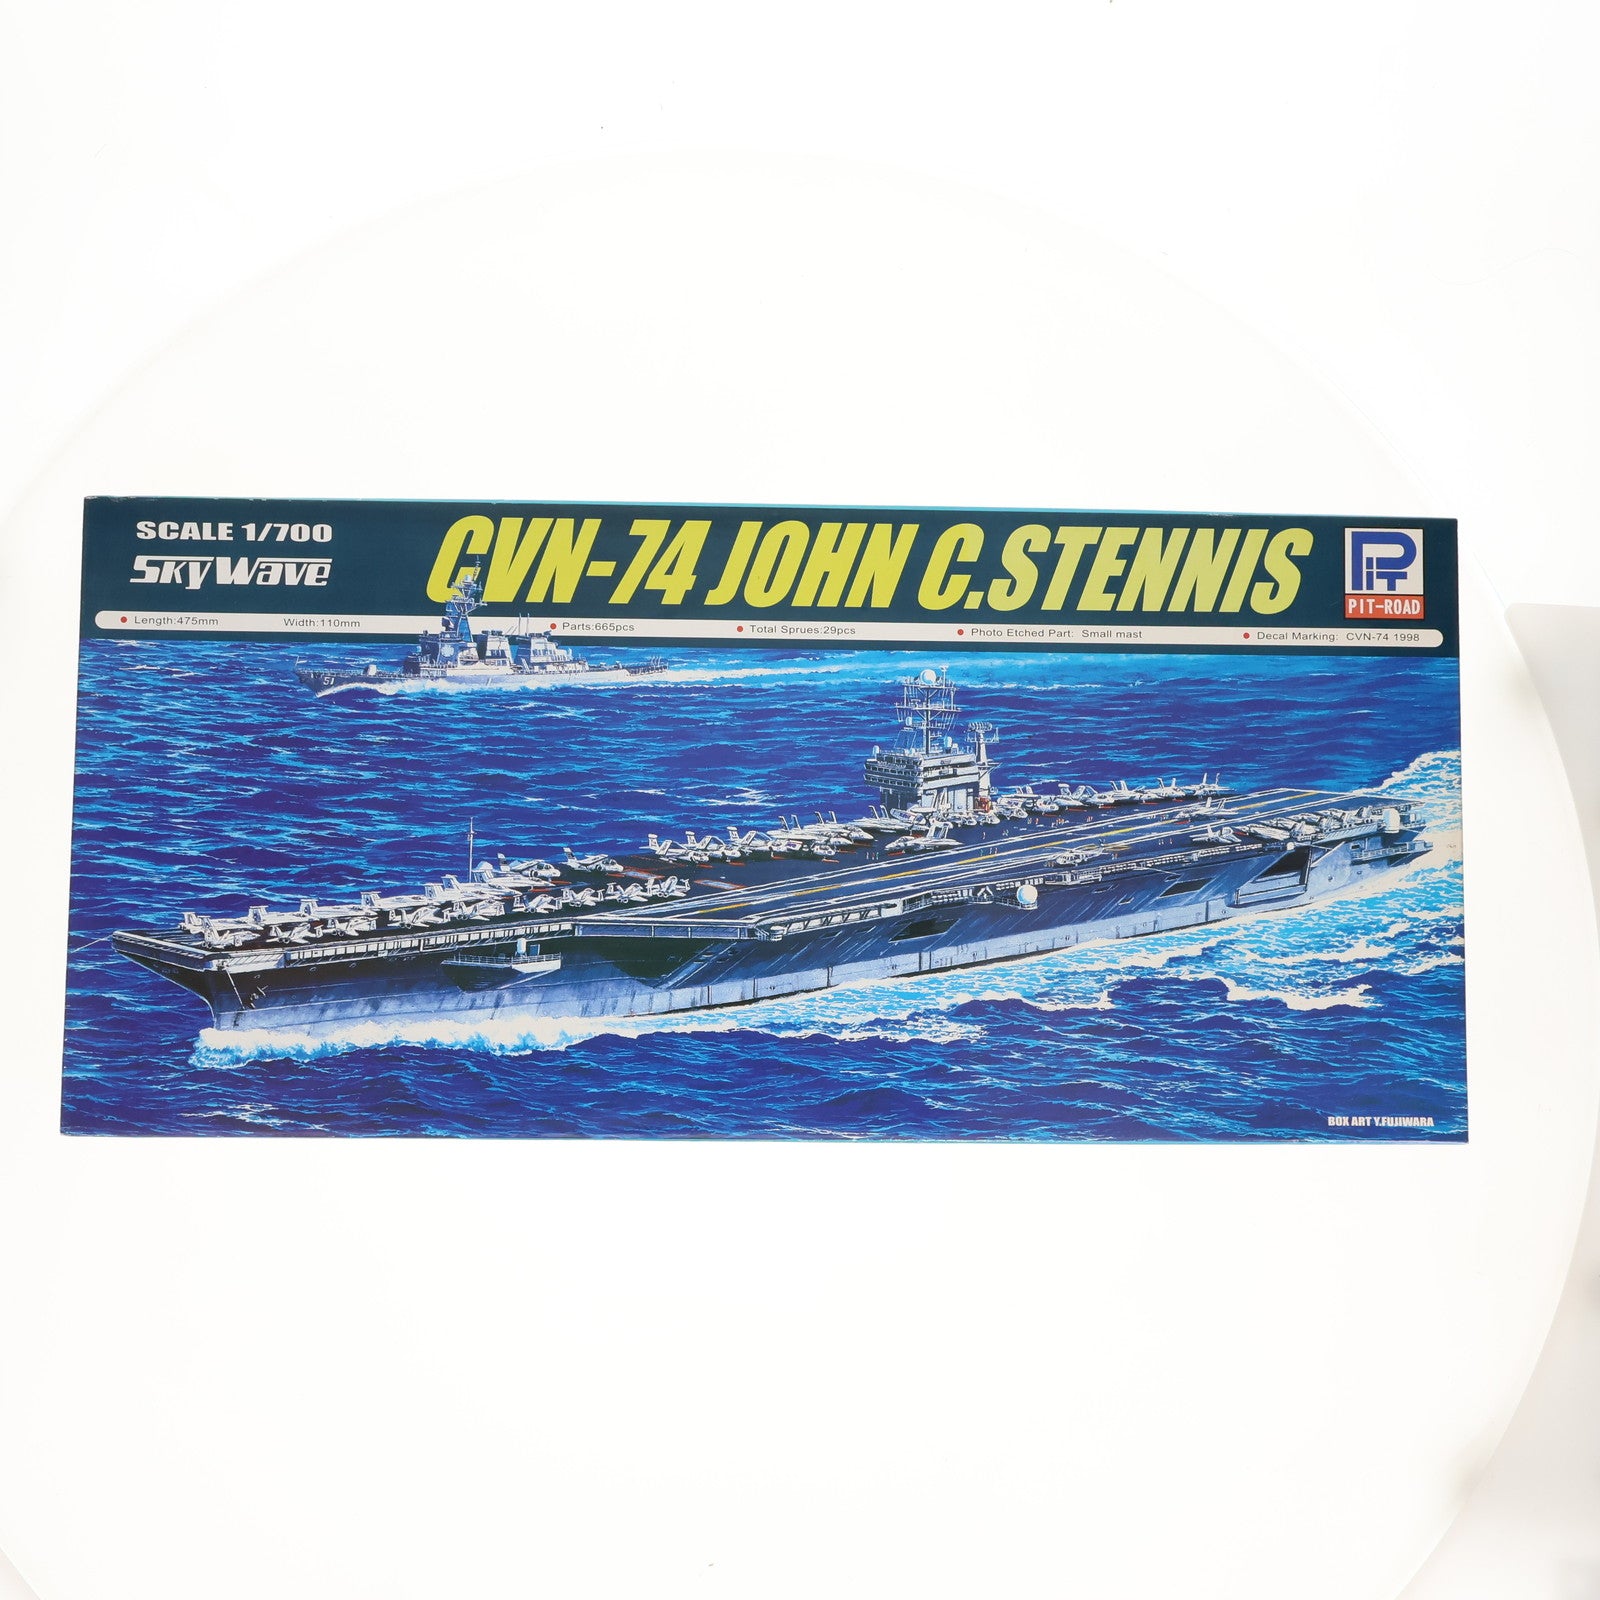 【中古即納】[PTM]スカイウェーブシリーズ 1/700 アメリカ海軍ニミッツ級原子力航空母艦 CVN-74 ジョンC.ステニス プラモデル(M33) ピットロード(20061231)